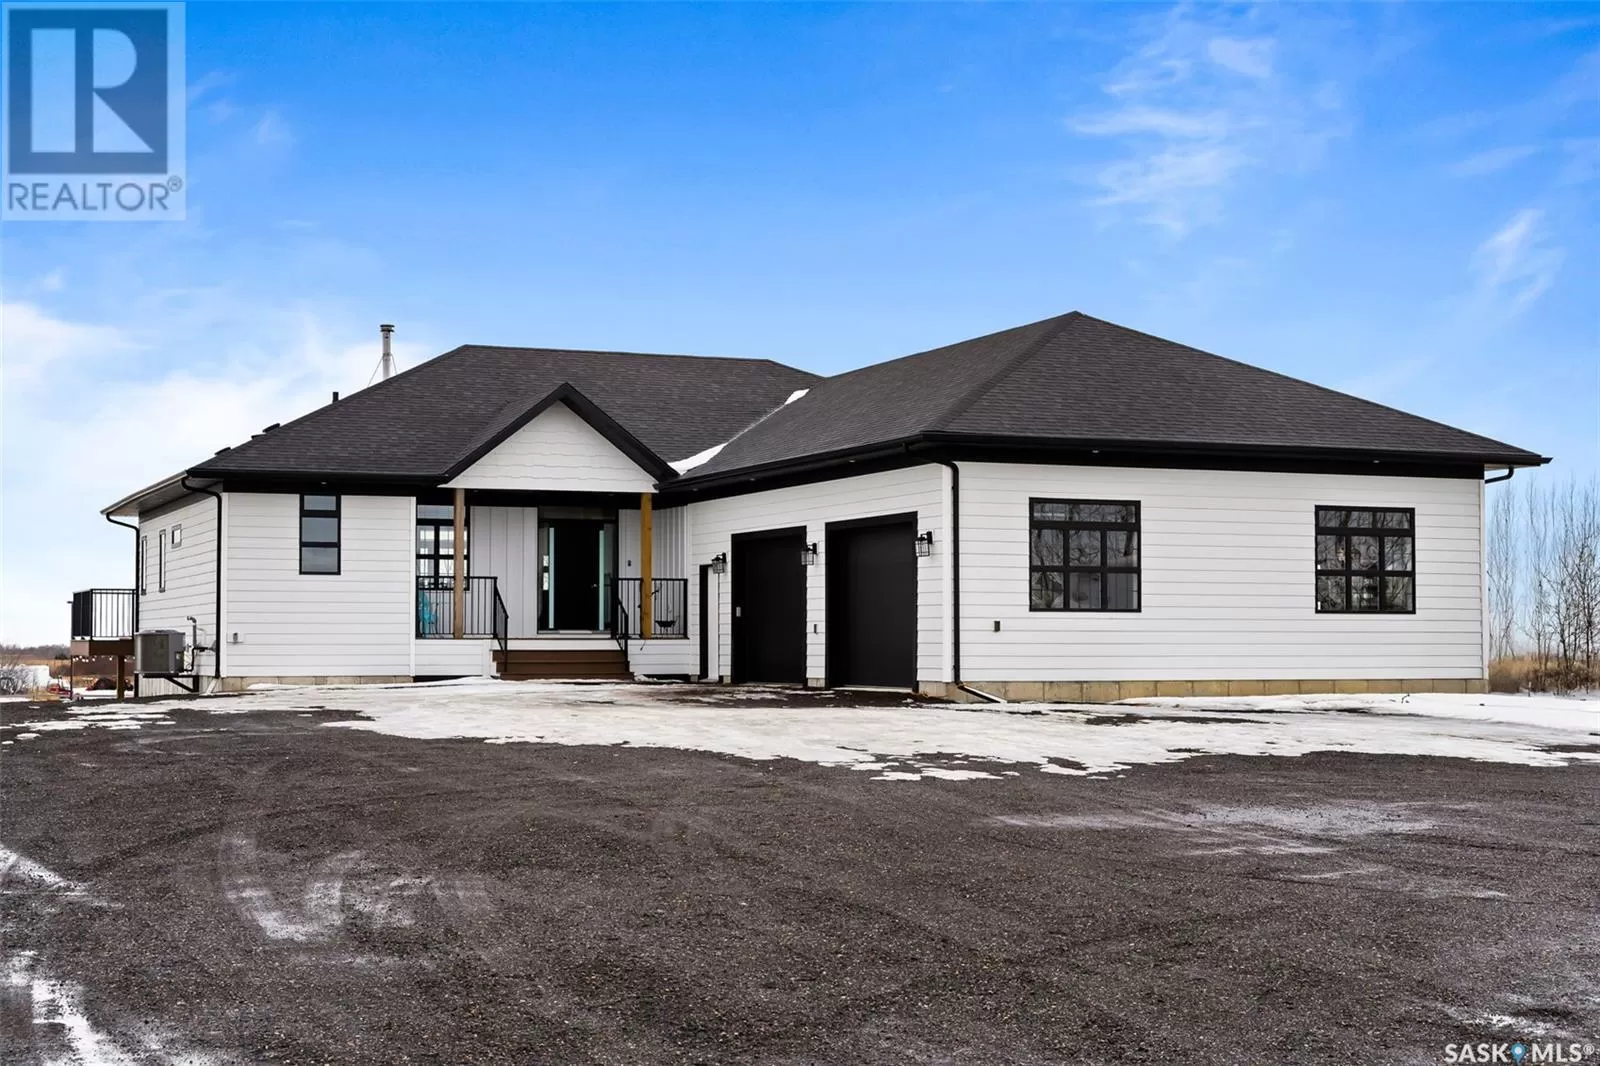 House for rent: . Gregory Avenue E, Edenwold Rm No. 158, Saskatchewan S4L 5B1